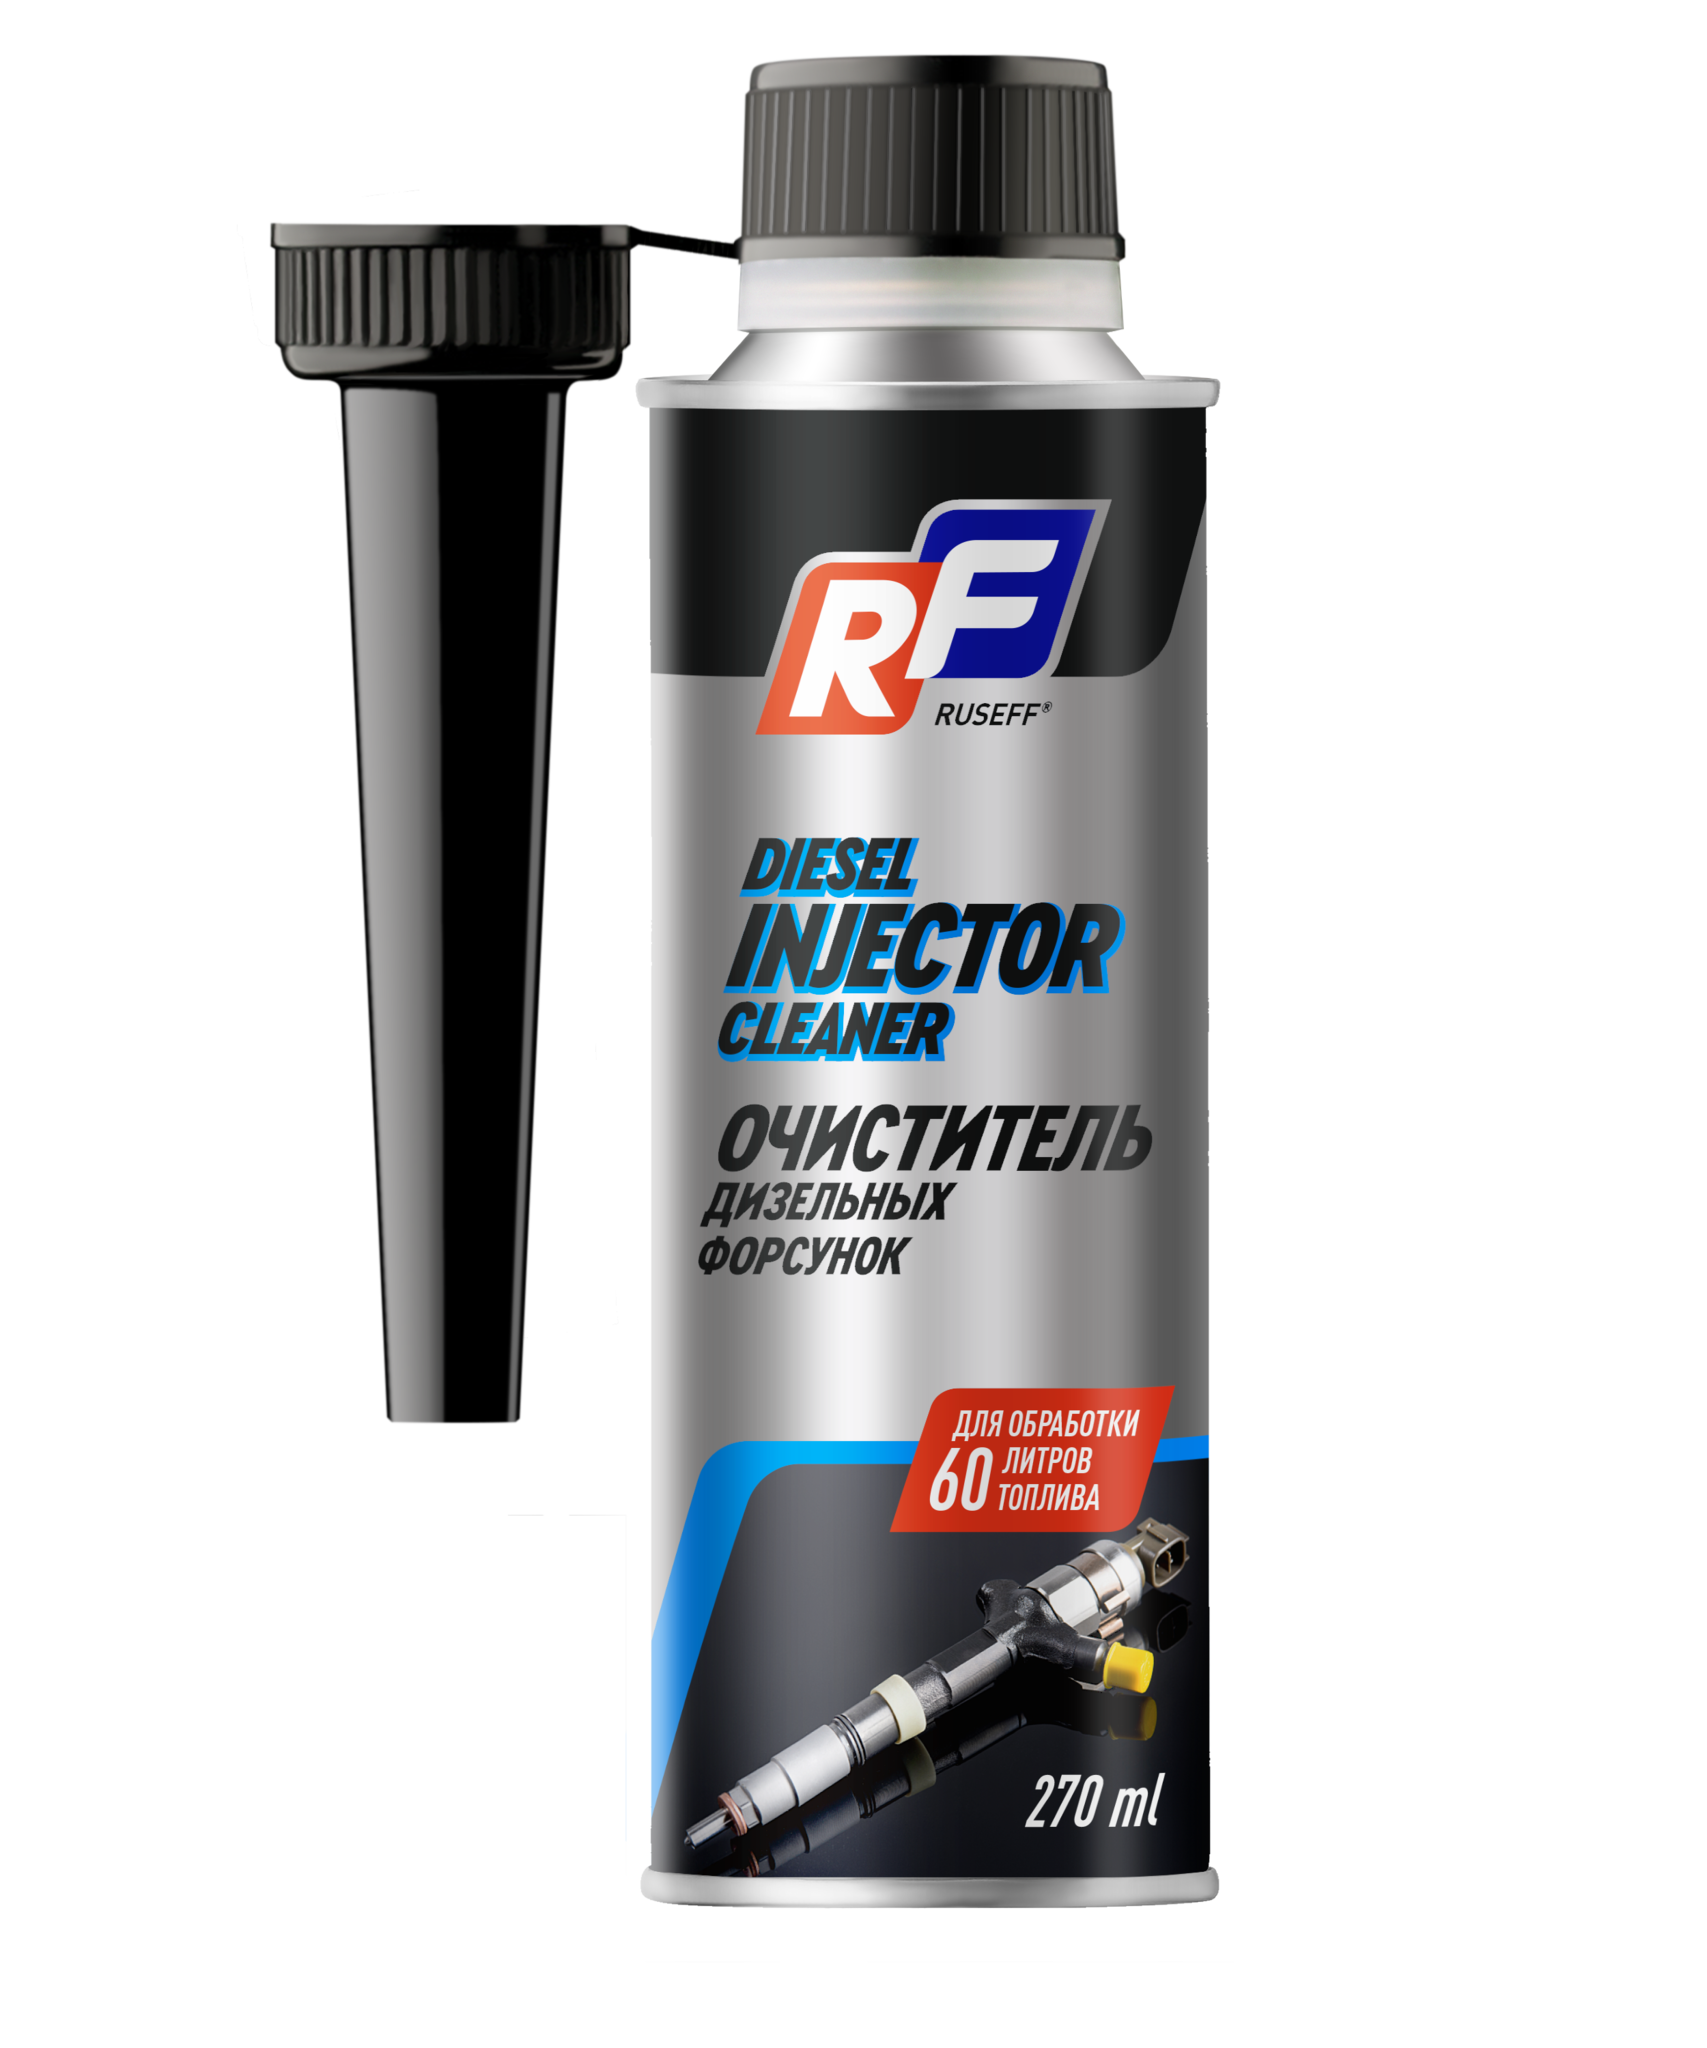 Ruseff Diesel Injector Cleaner Очиститель дизельных форсунок